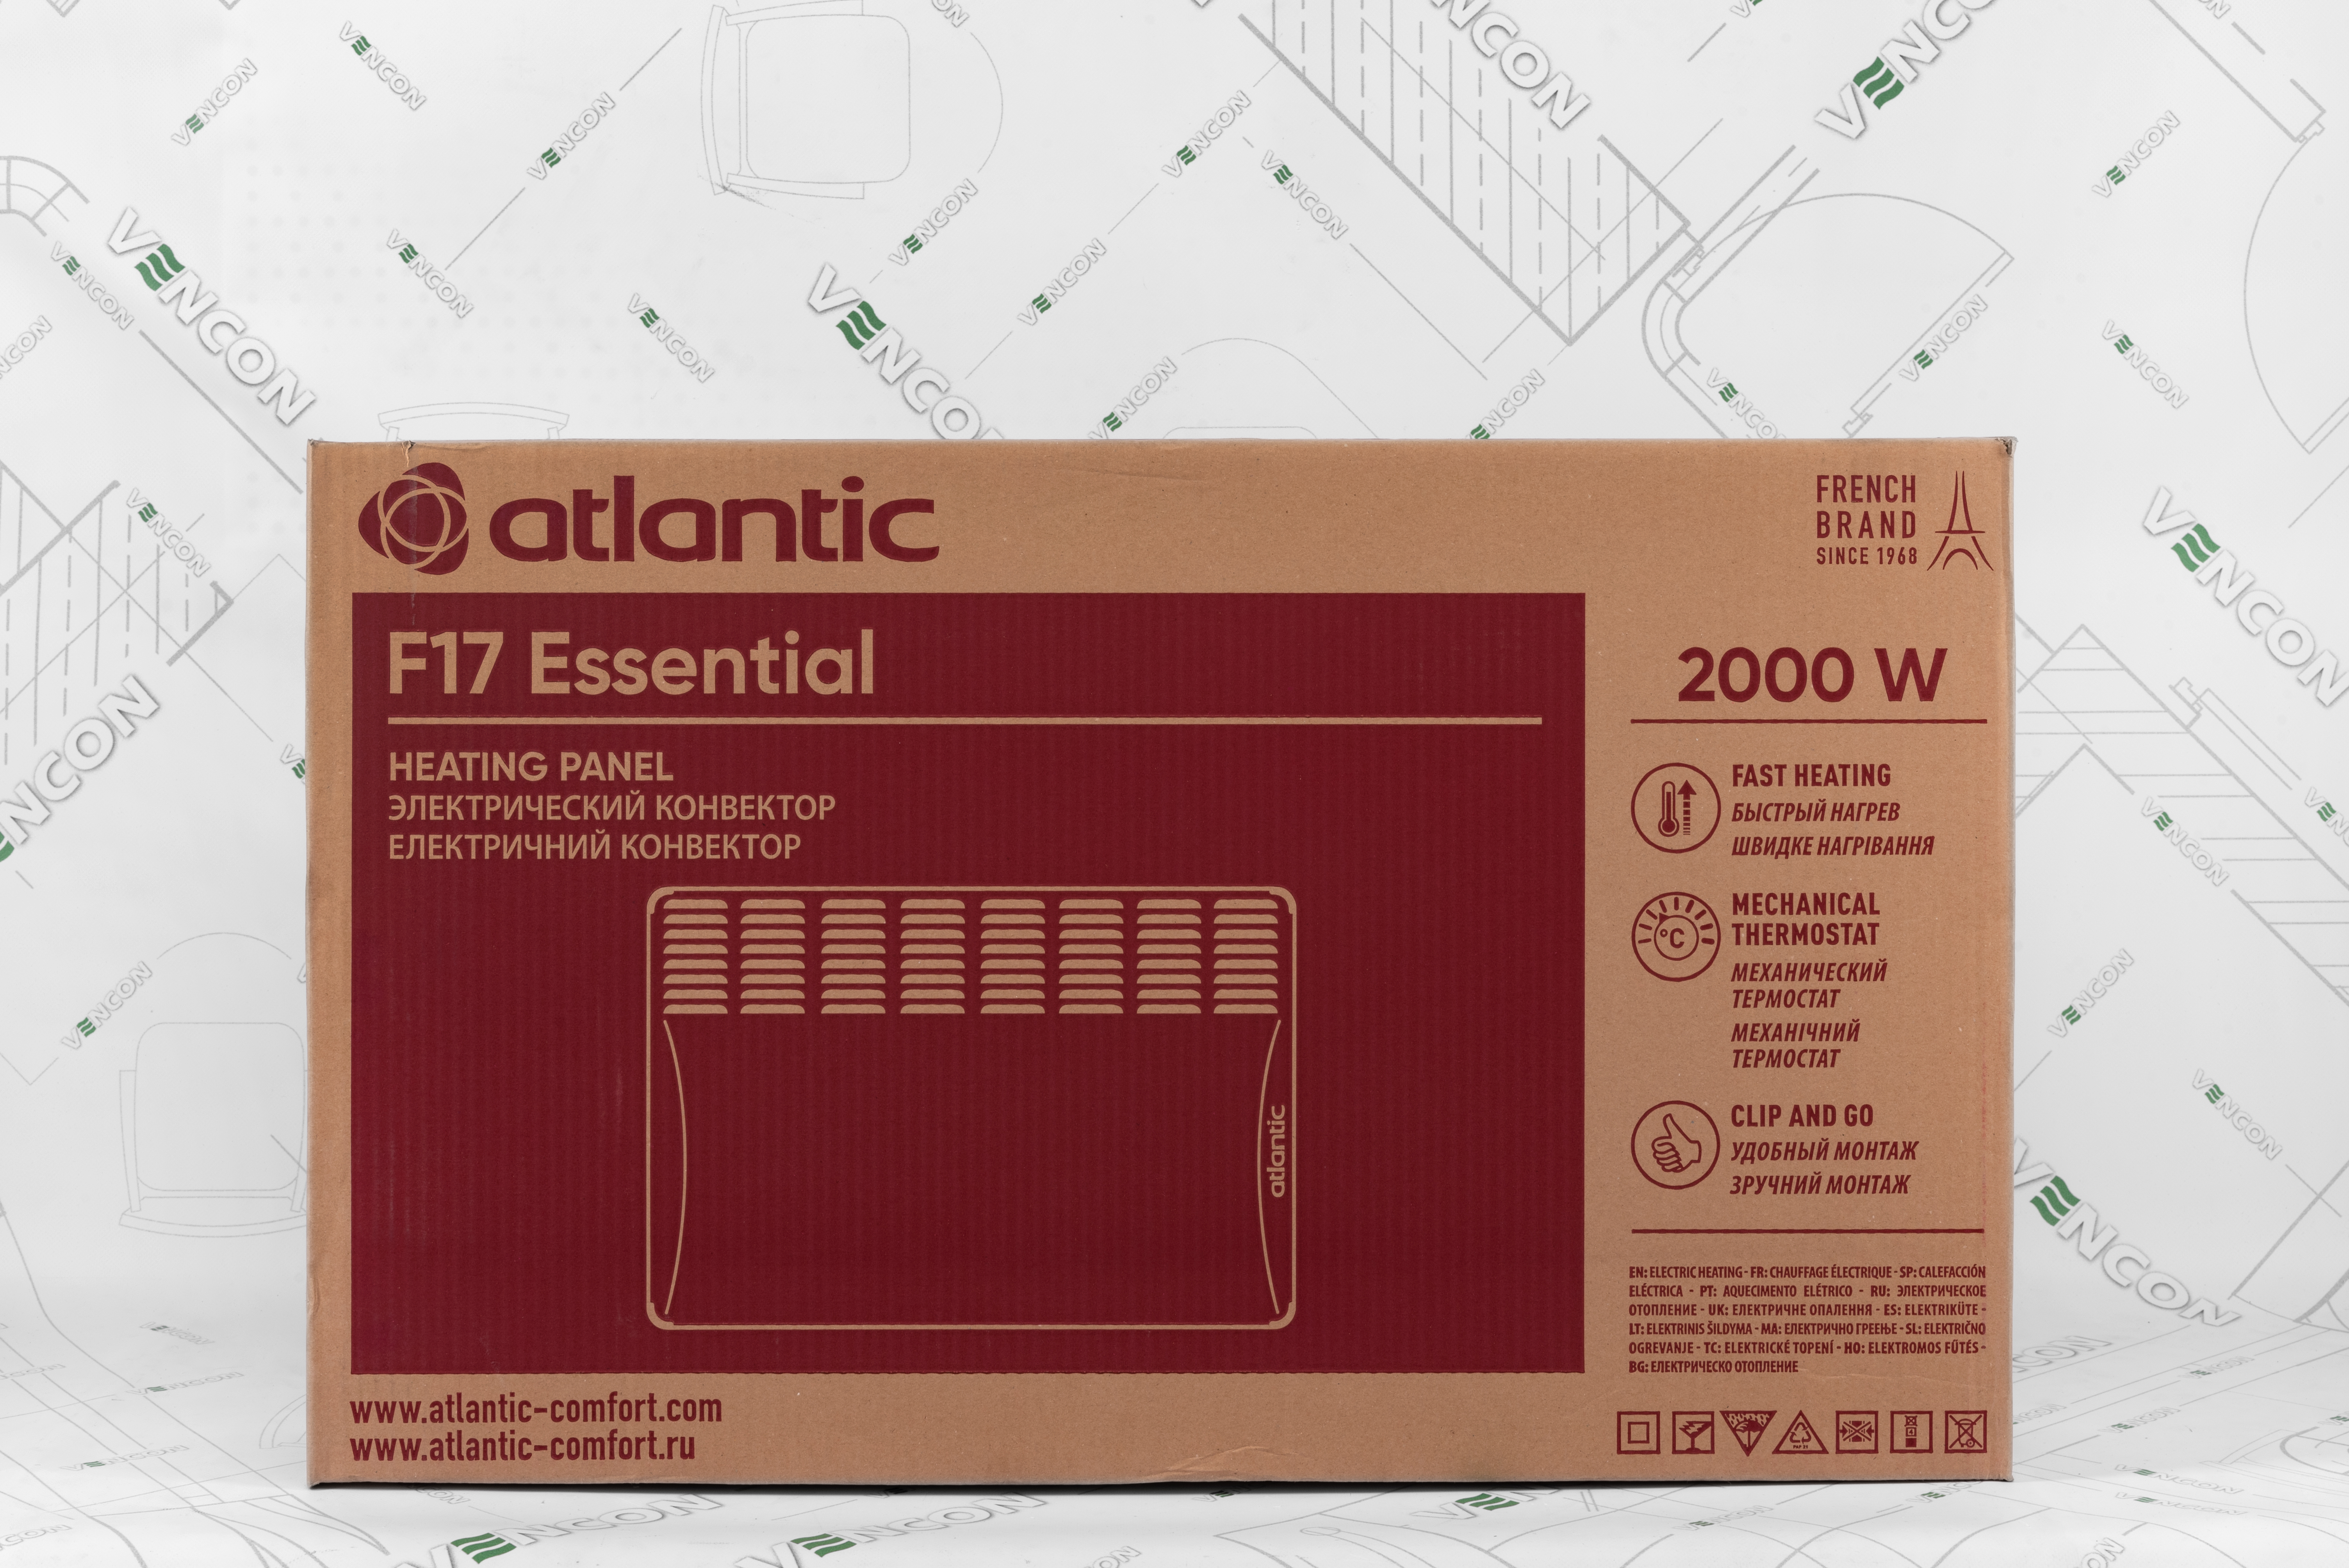 Электрический конвектор Atlantic F17 Essential CMG BL-meca 2000 обзор - фото 11